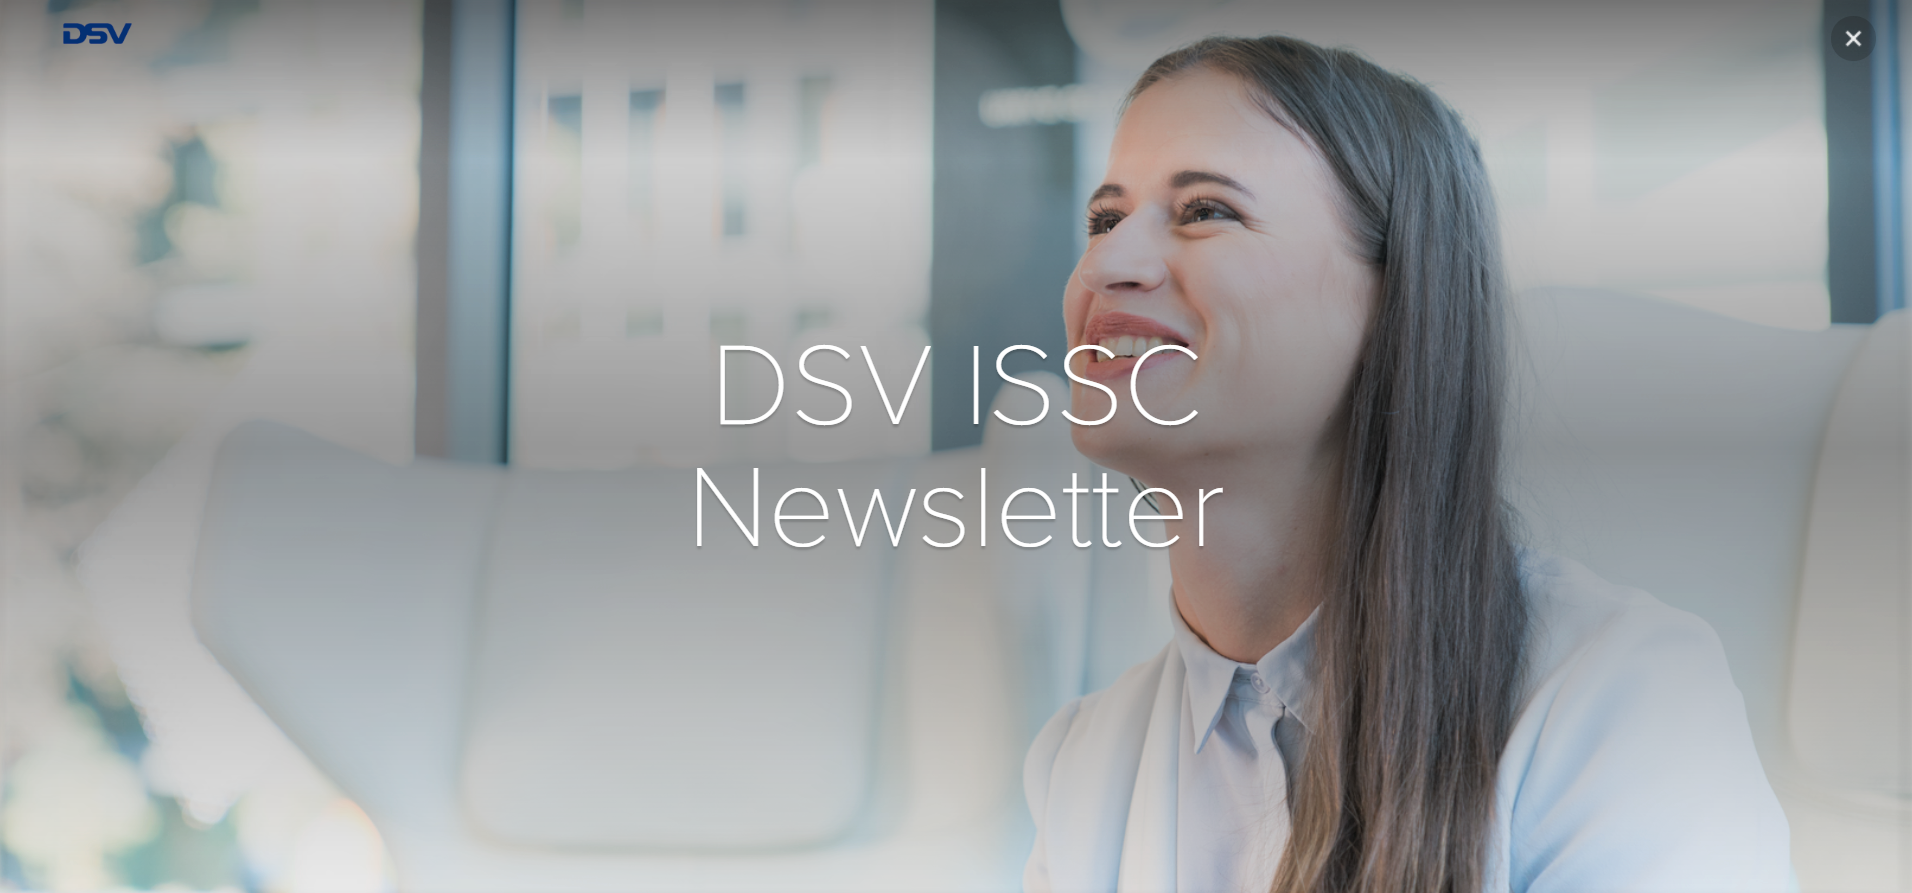 DSV ISSC Newsletter for Students